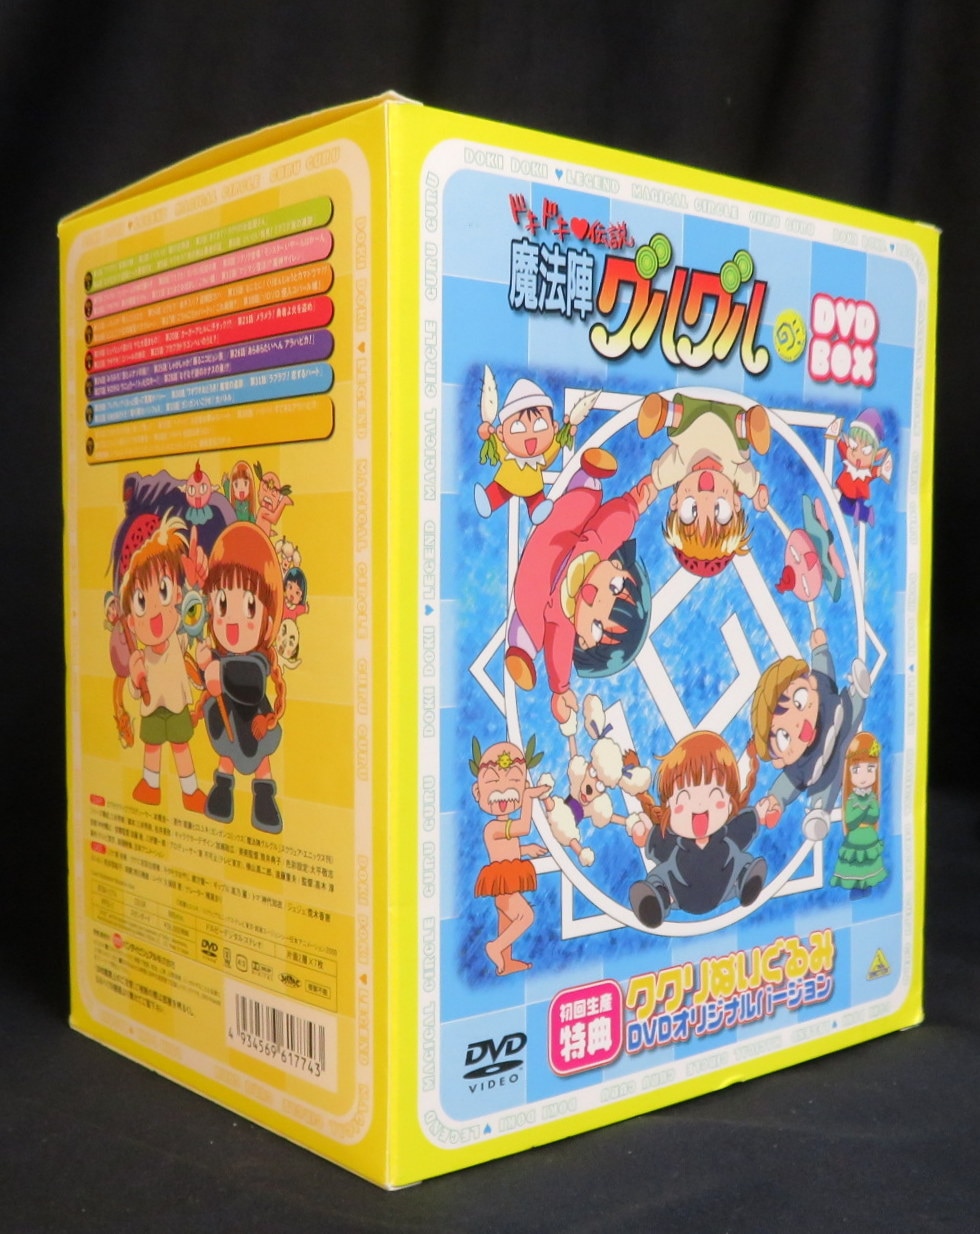 ドキドキ伝説 魔法陣グルグル DVD-BOX www.krzysztofbialy.com